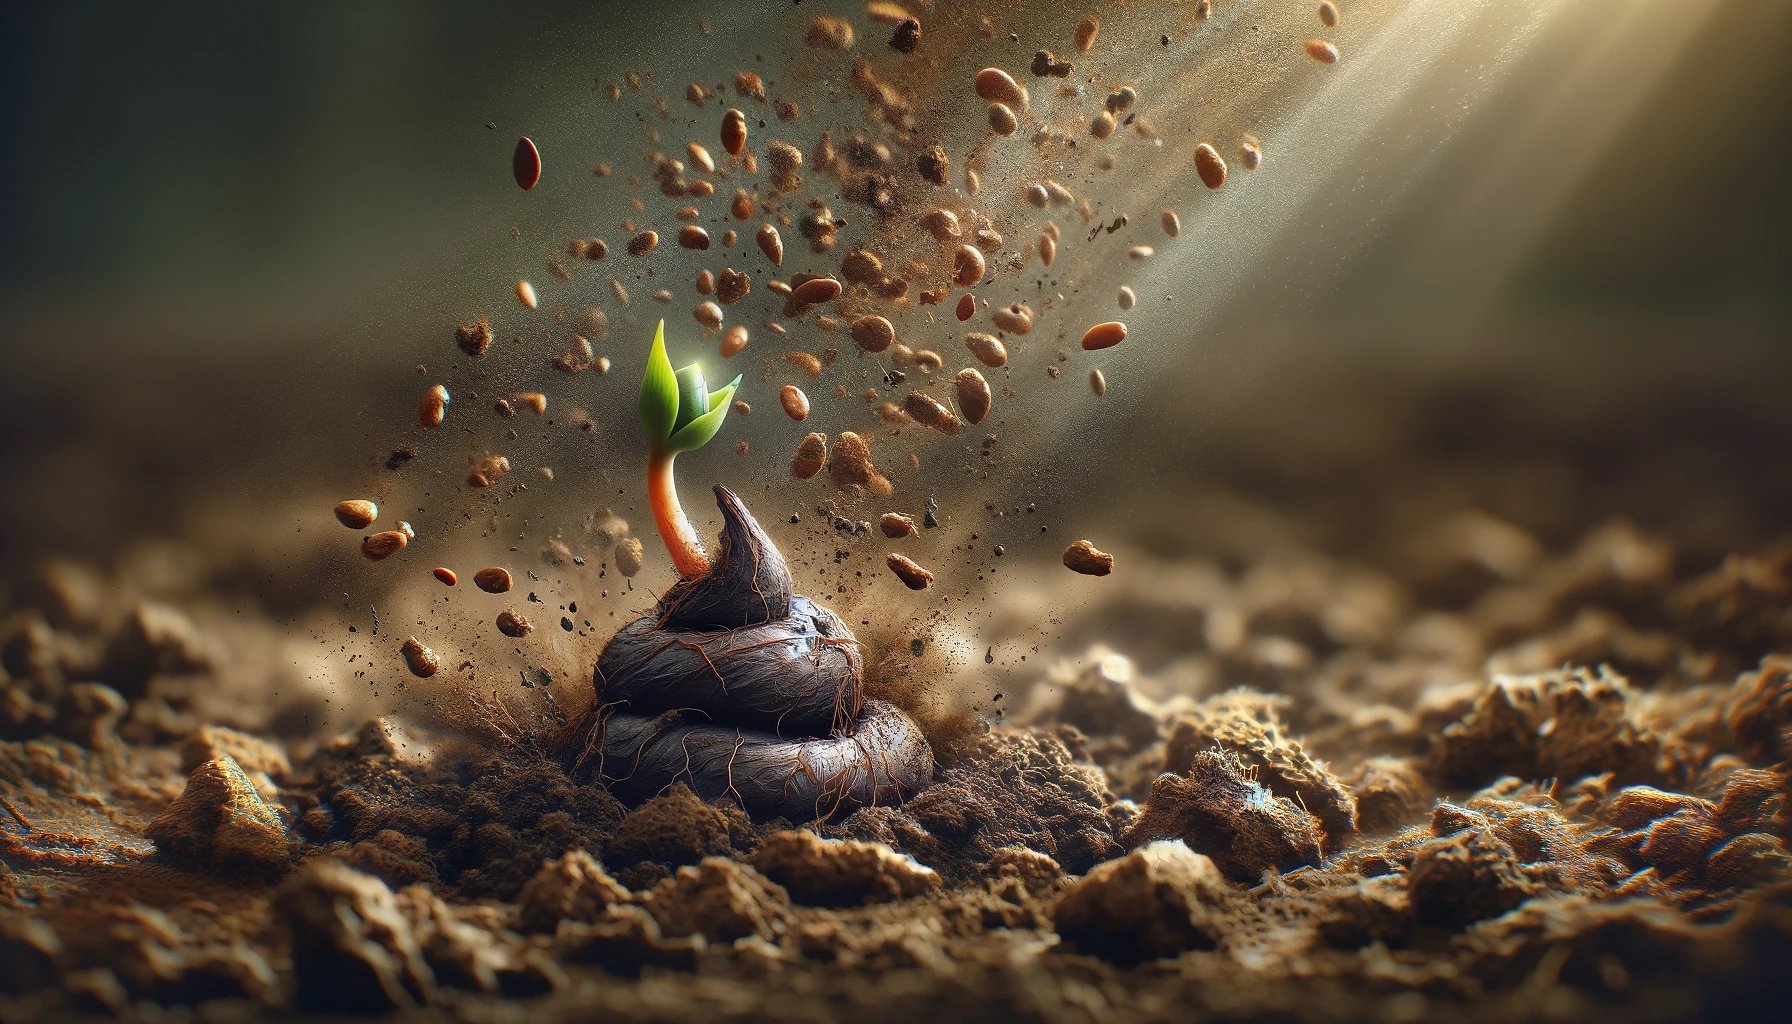 crecimiento espiritual y transformación personal simbolizados por una semilla germinando